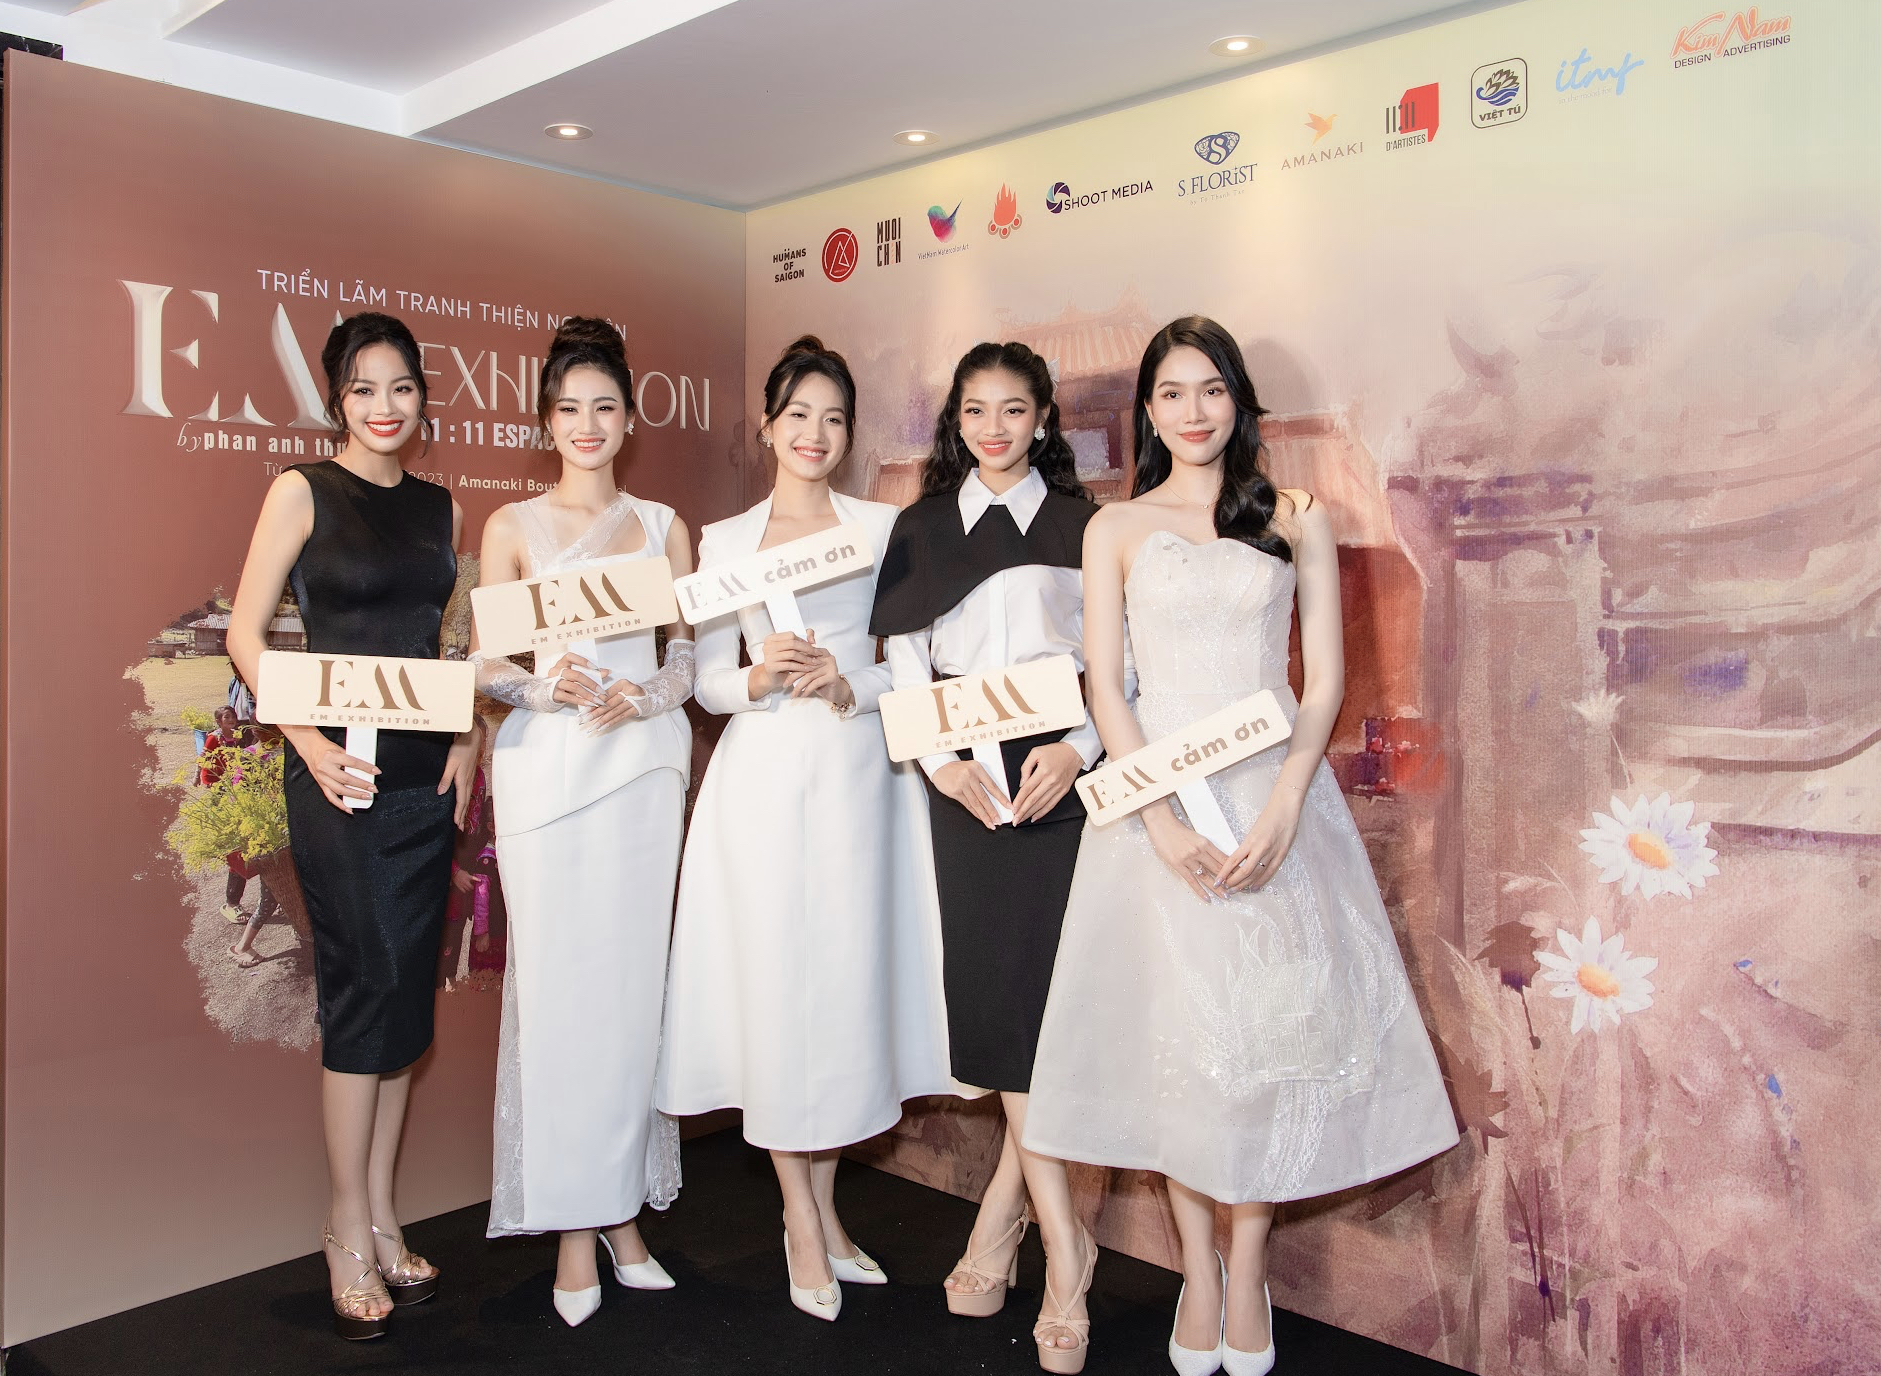 Hoa hậu Ý Nhi đồng hành cùng triển lãm tranh thiện nguyện của hoạ sĩ trẻ Phan Anh Thư  - Ảnh 3.